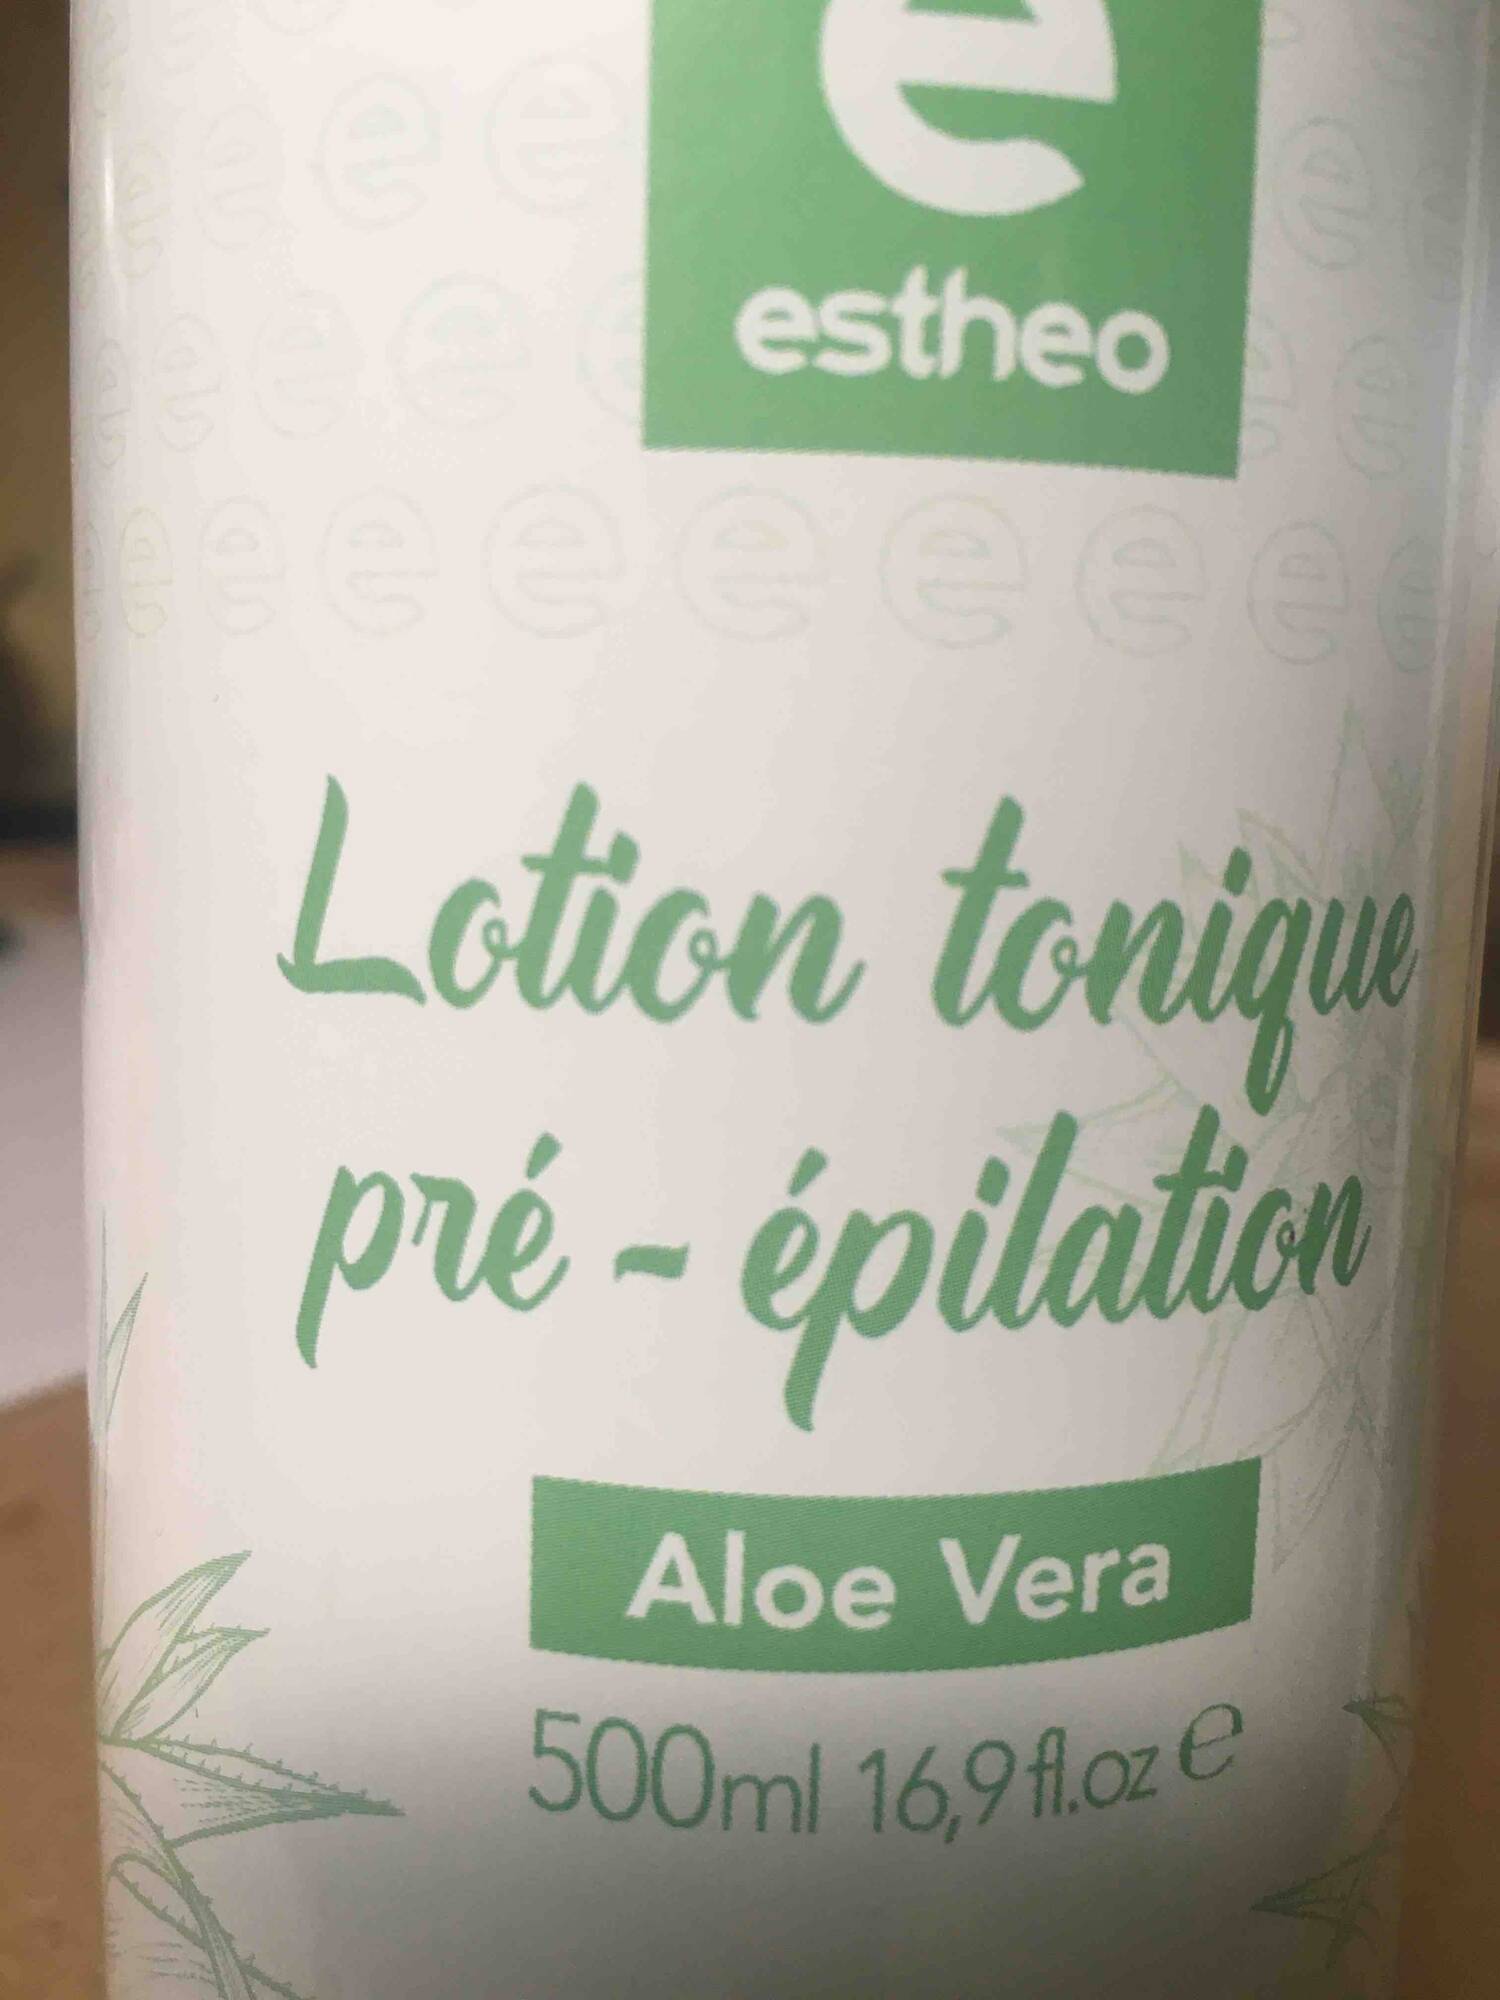 ESTHEO - Lotion tonique pré-épilation aloe vera